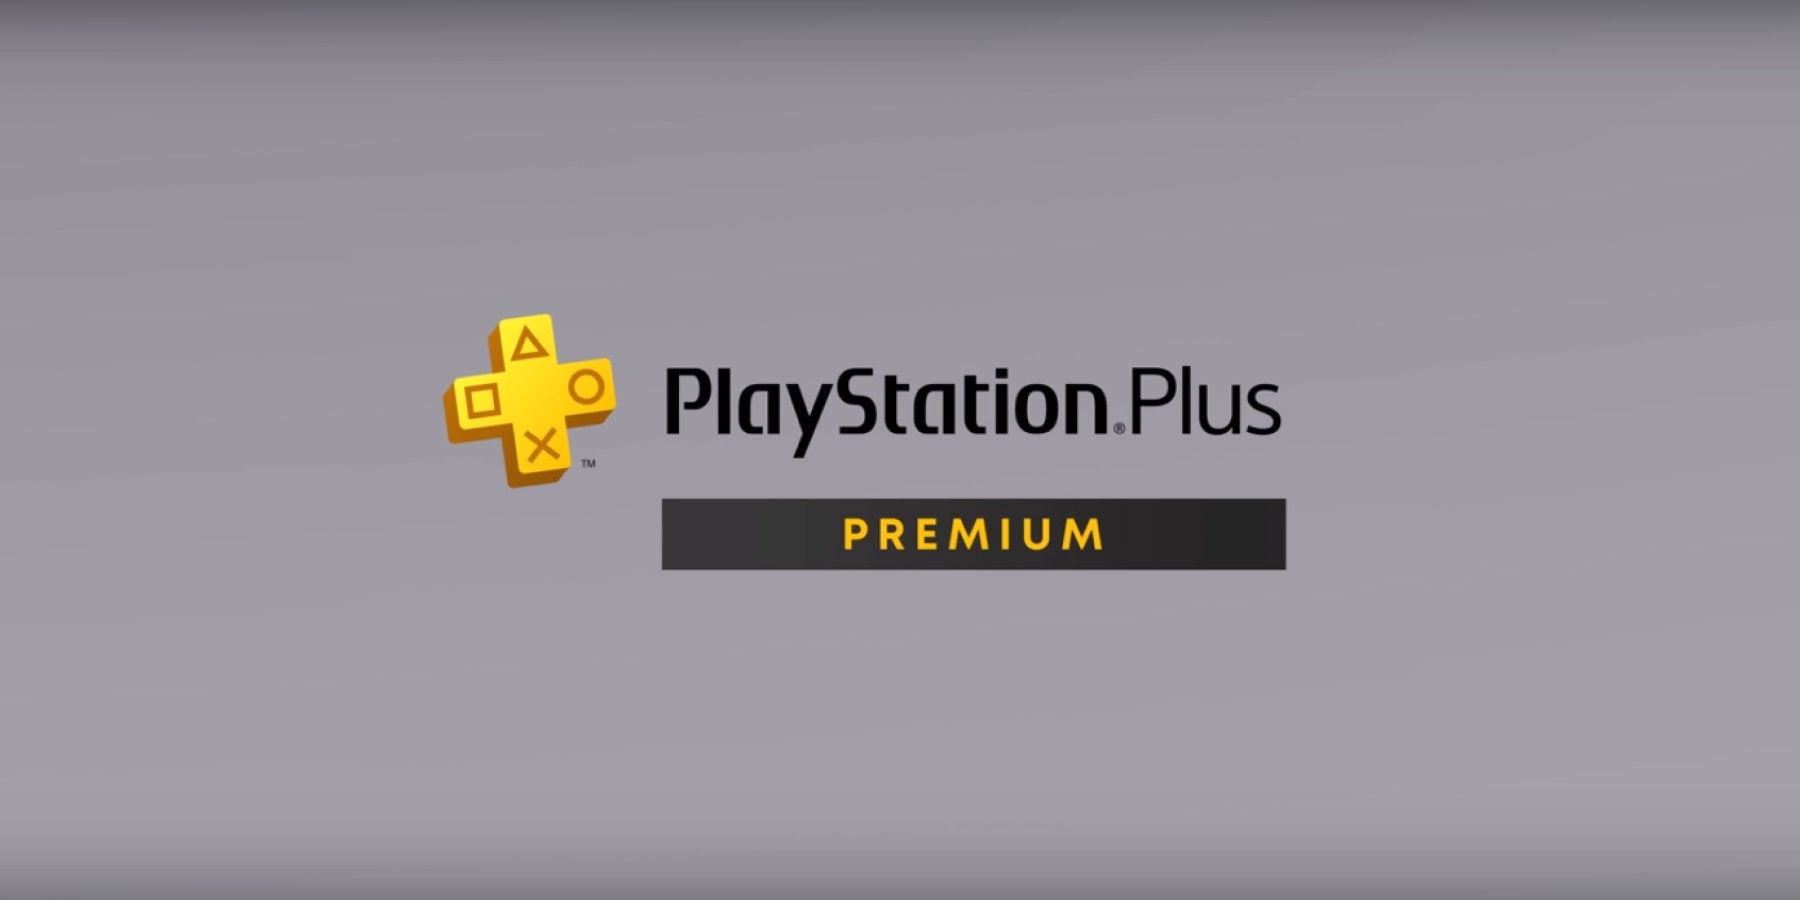 Is PS Plus Premium Worth the Price?